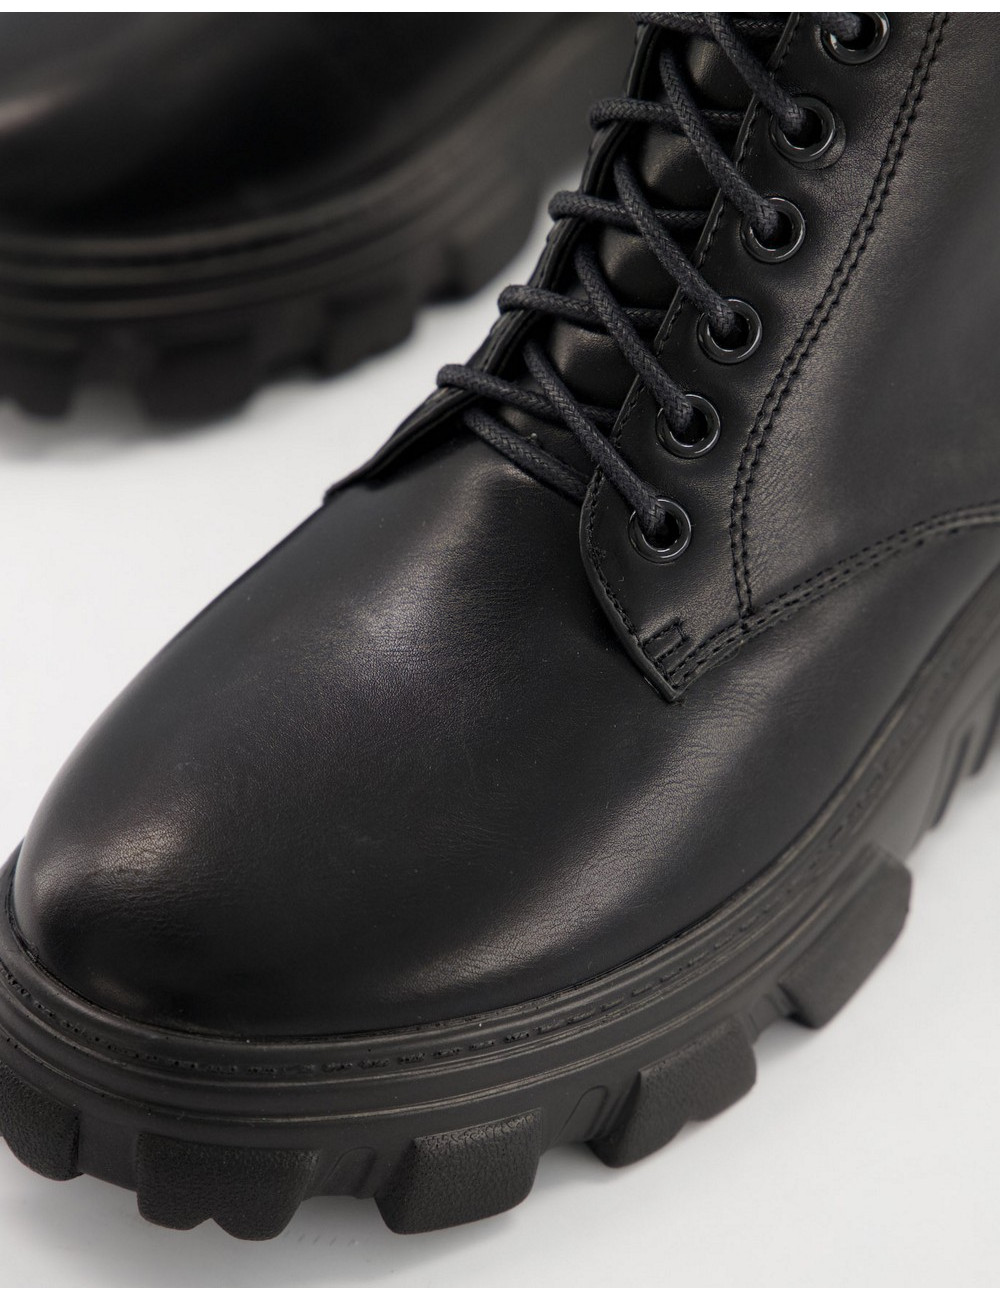 Pimkie chunky boot in black